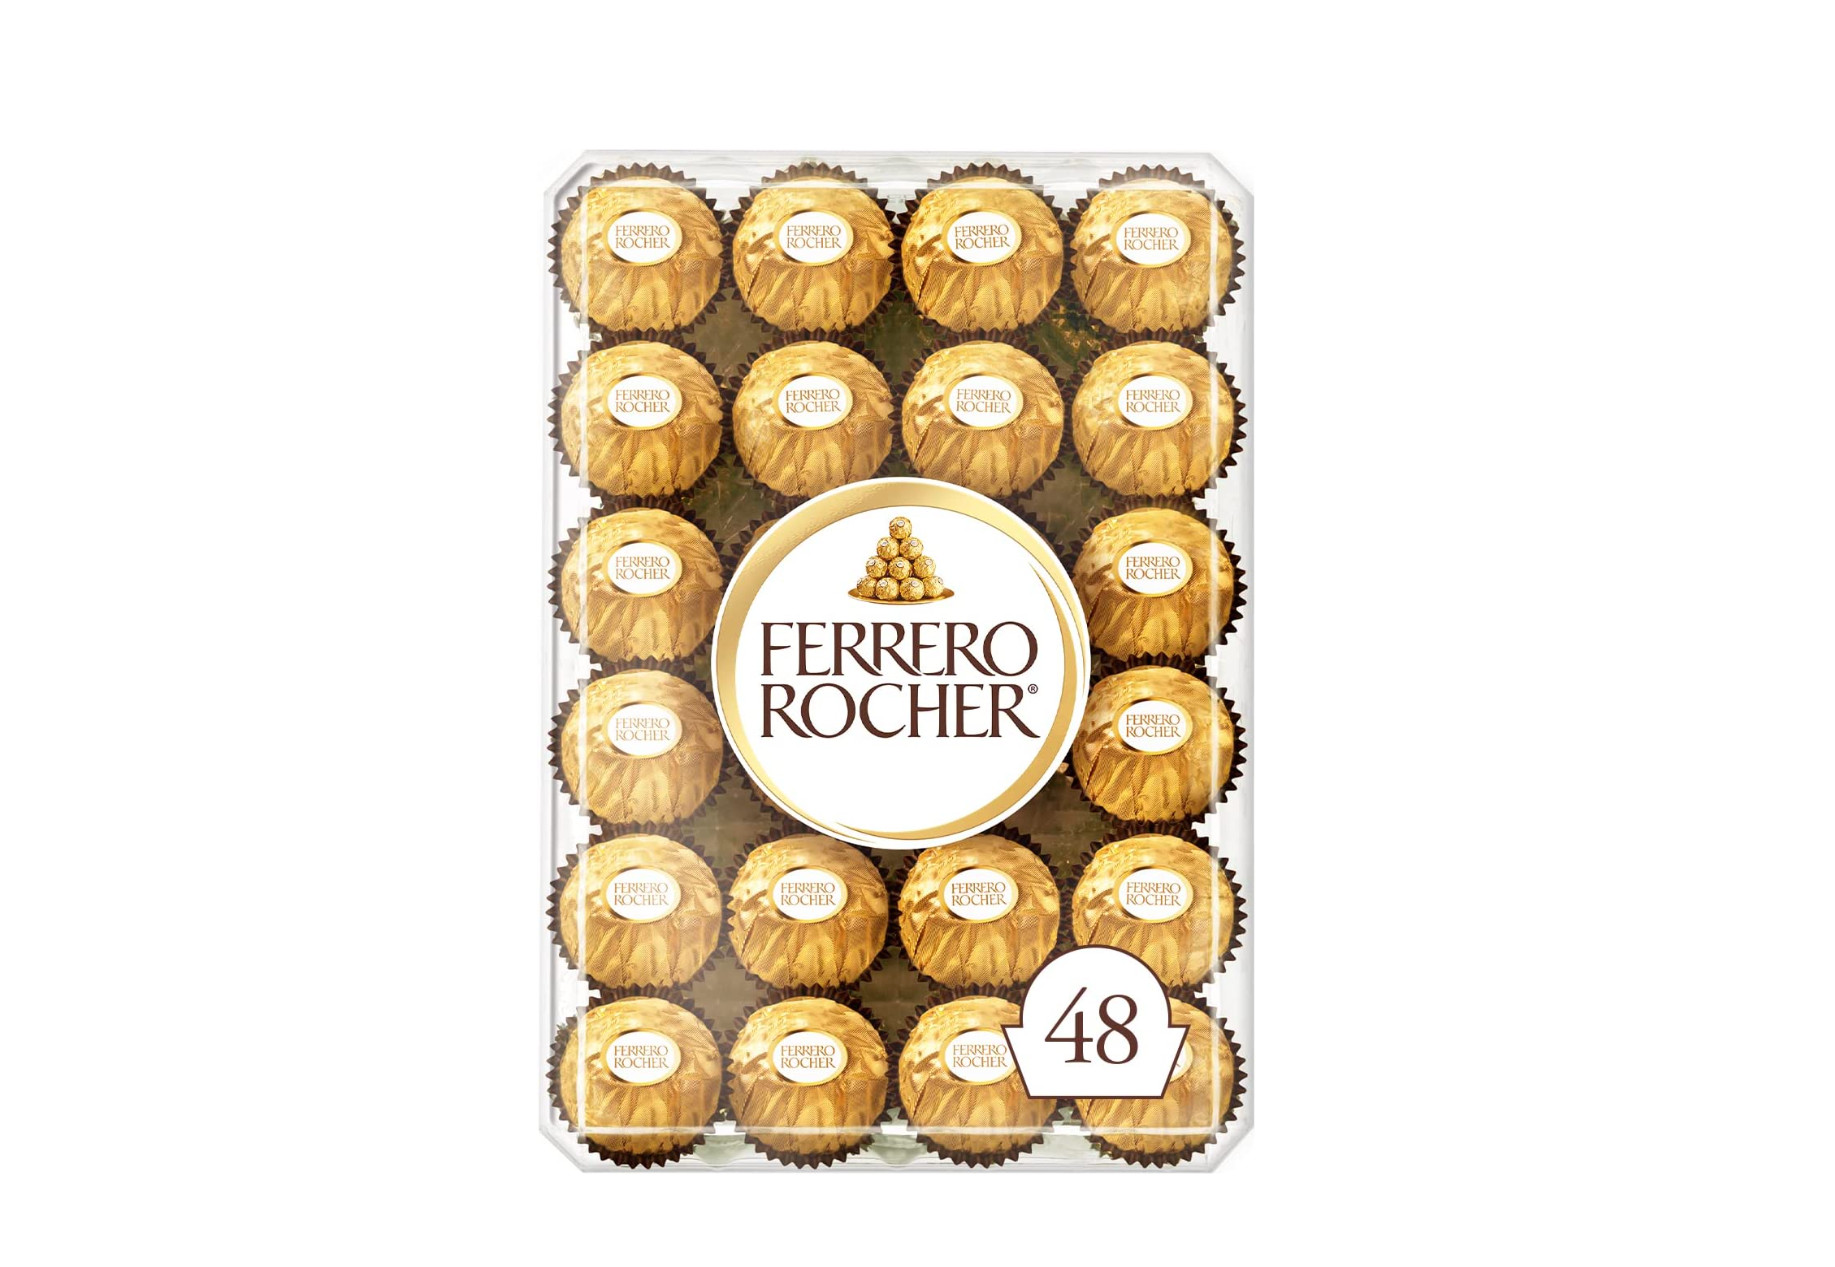 FERRERO ROCHER费列罗 巧克力礼盒装 96颗-省钱快报